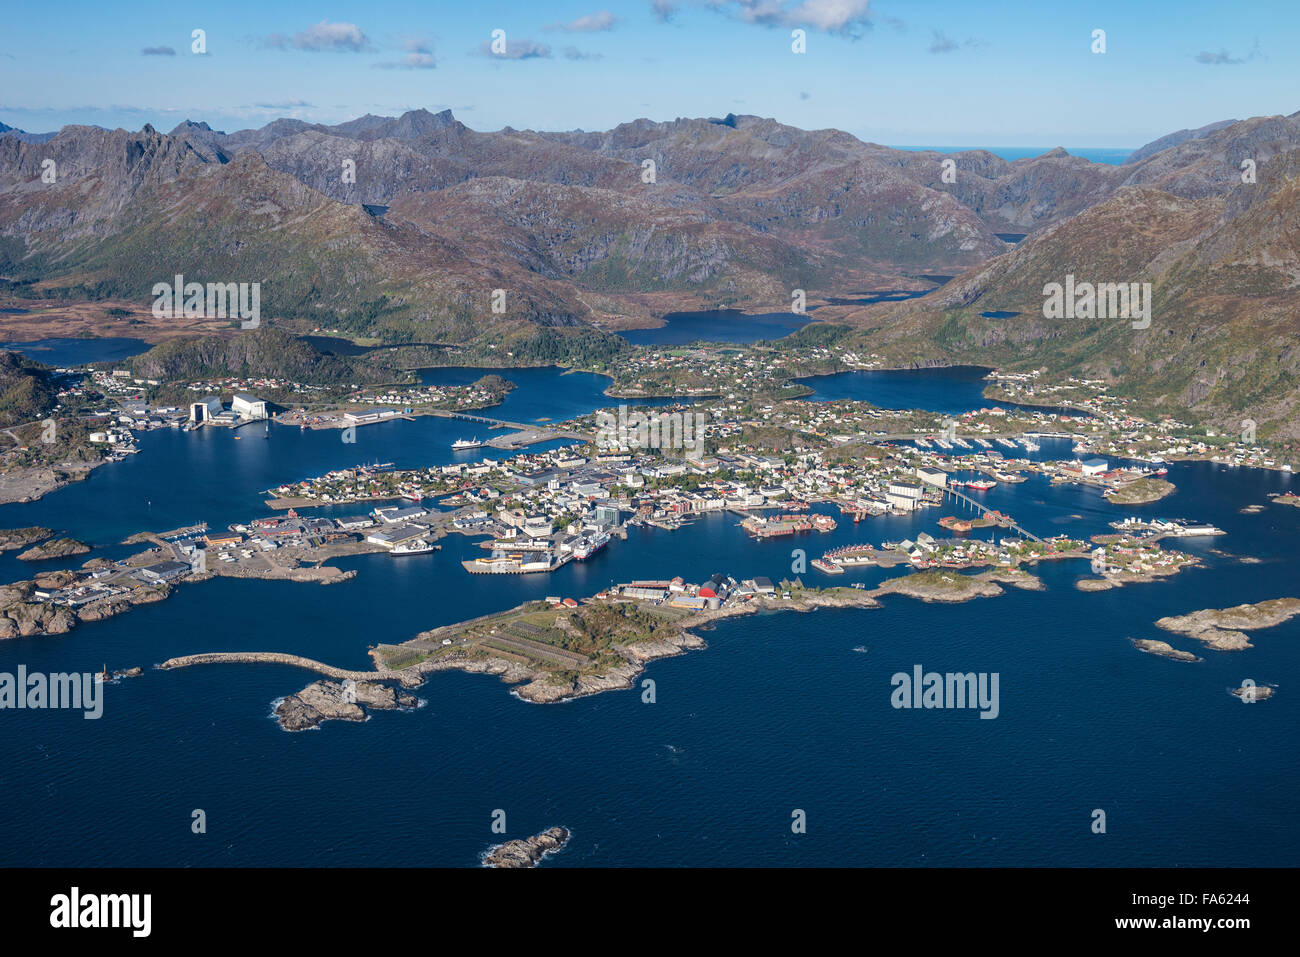 Veduta aerea villaggio di Svolvaer, Austvågøy, Isole Lofoten in Norvegia Foto Stock